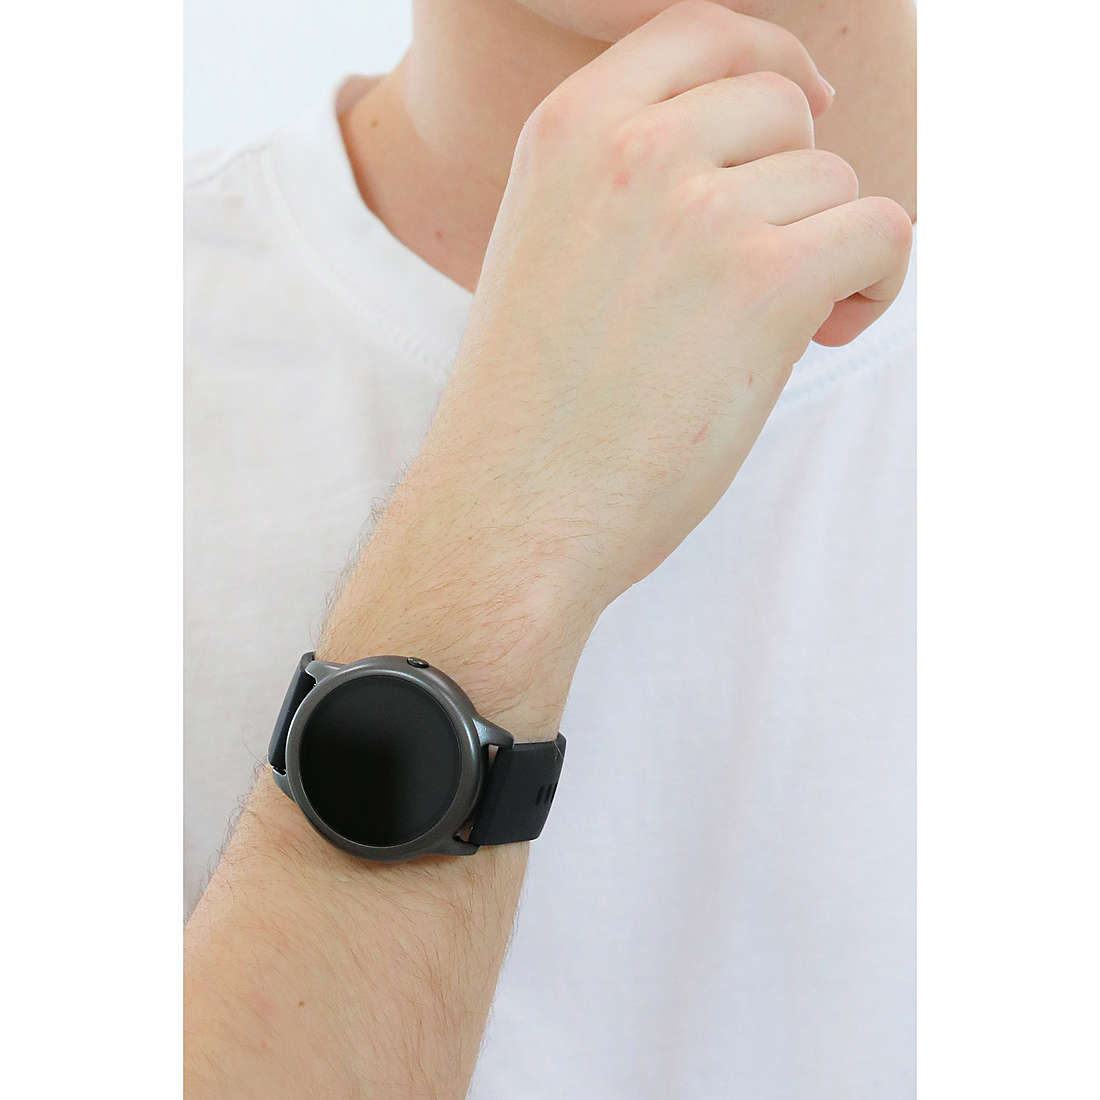 David Lian Smartwatches Dubai uomo DL118 indosso